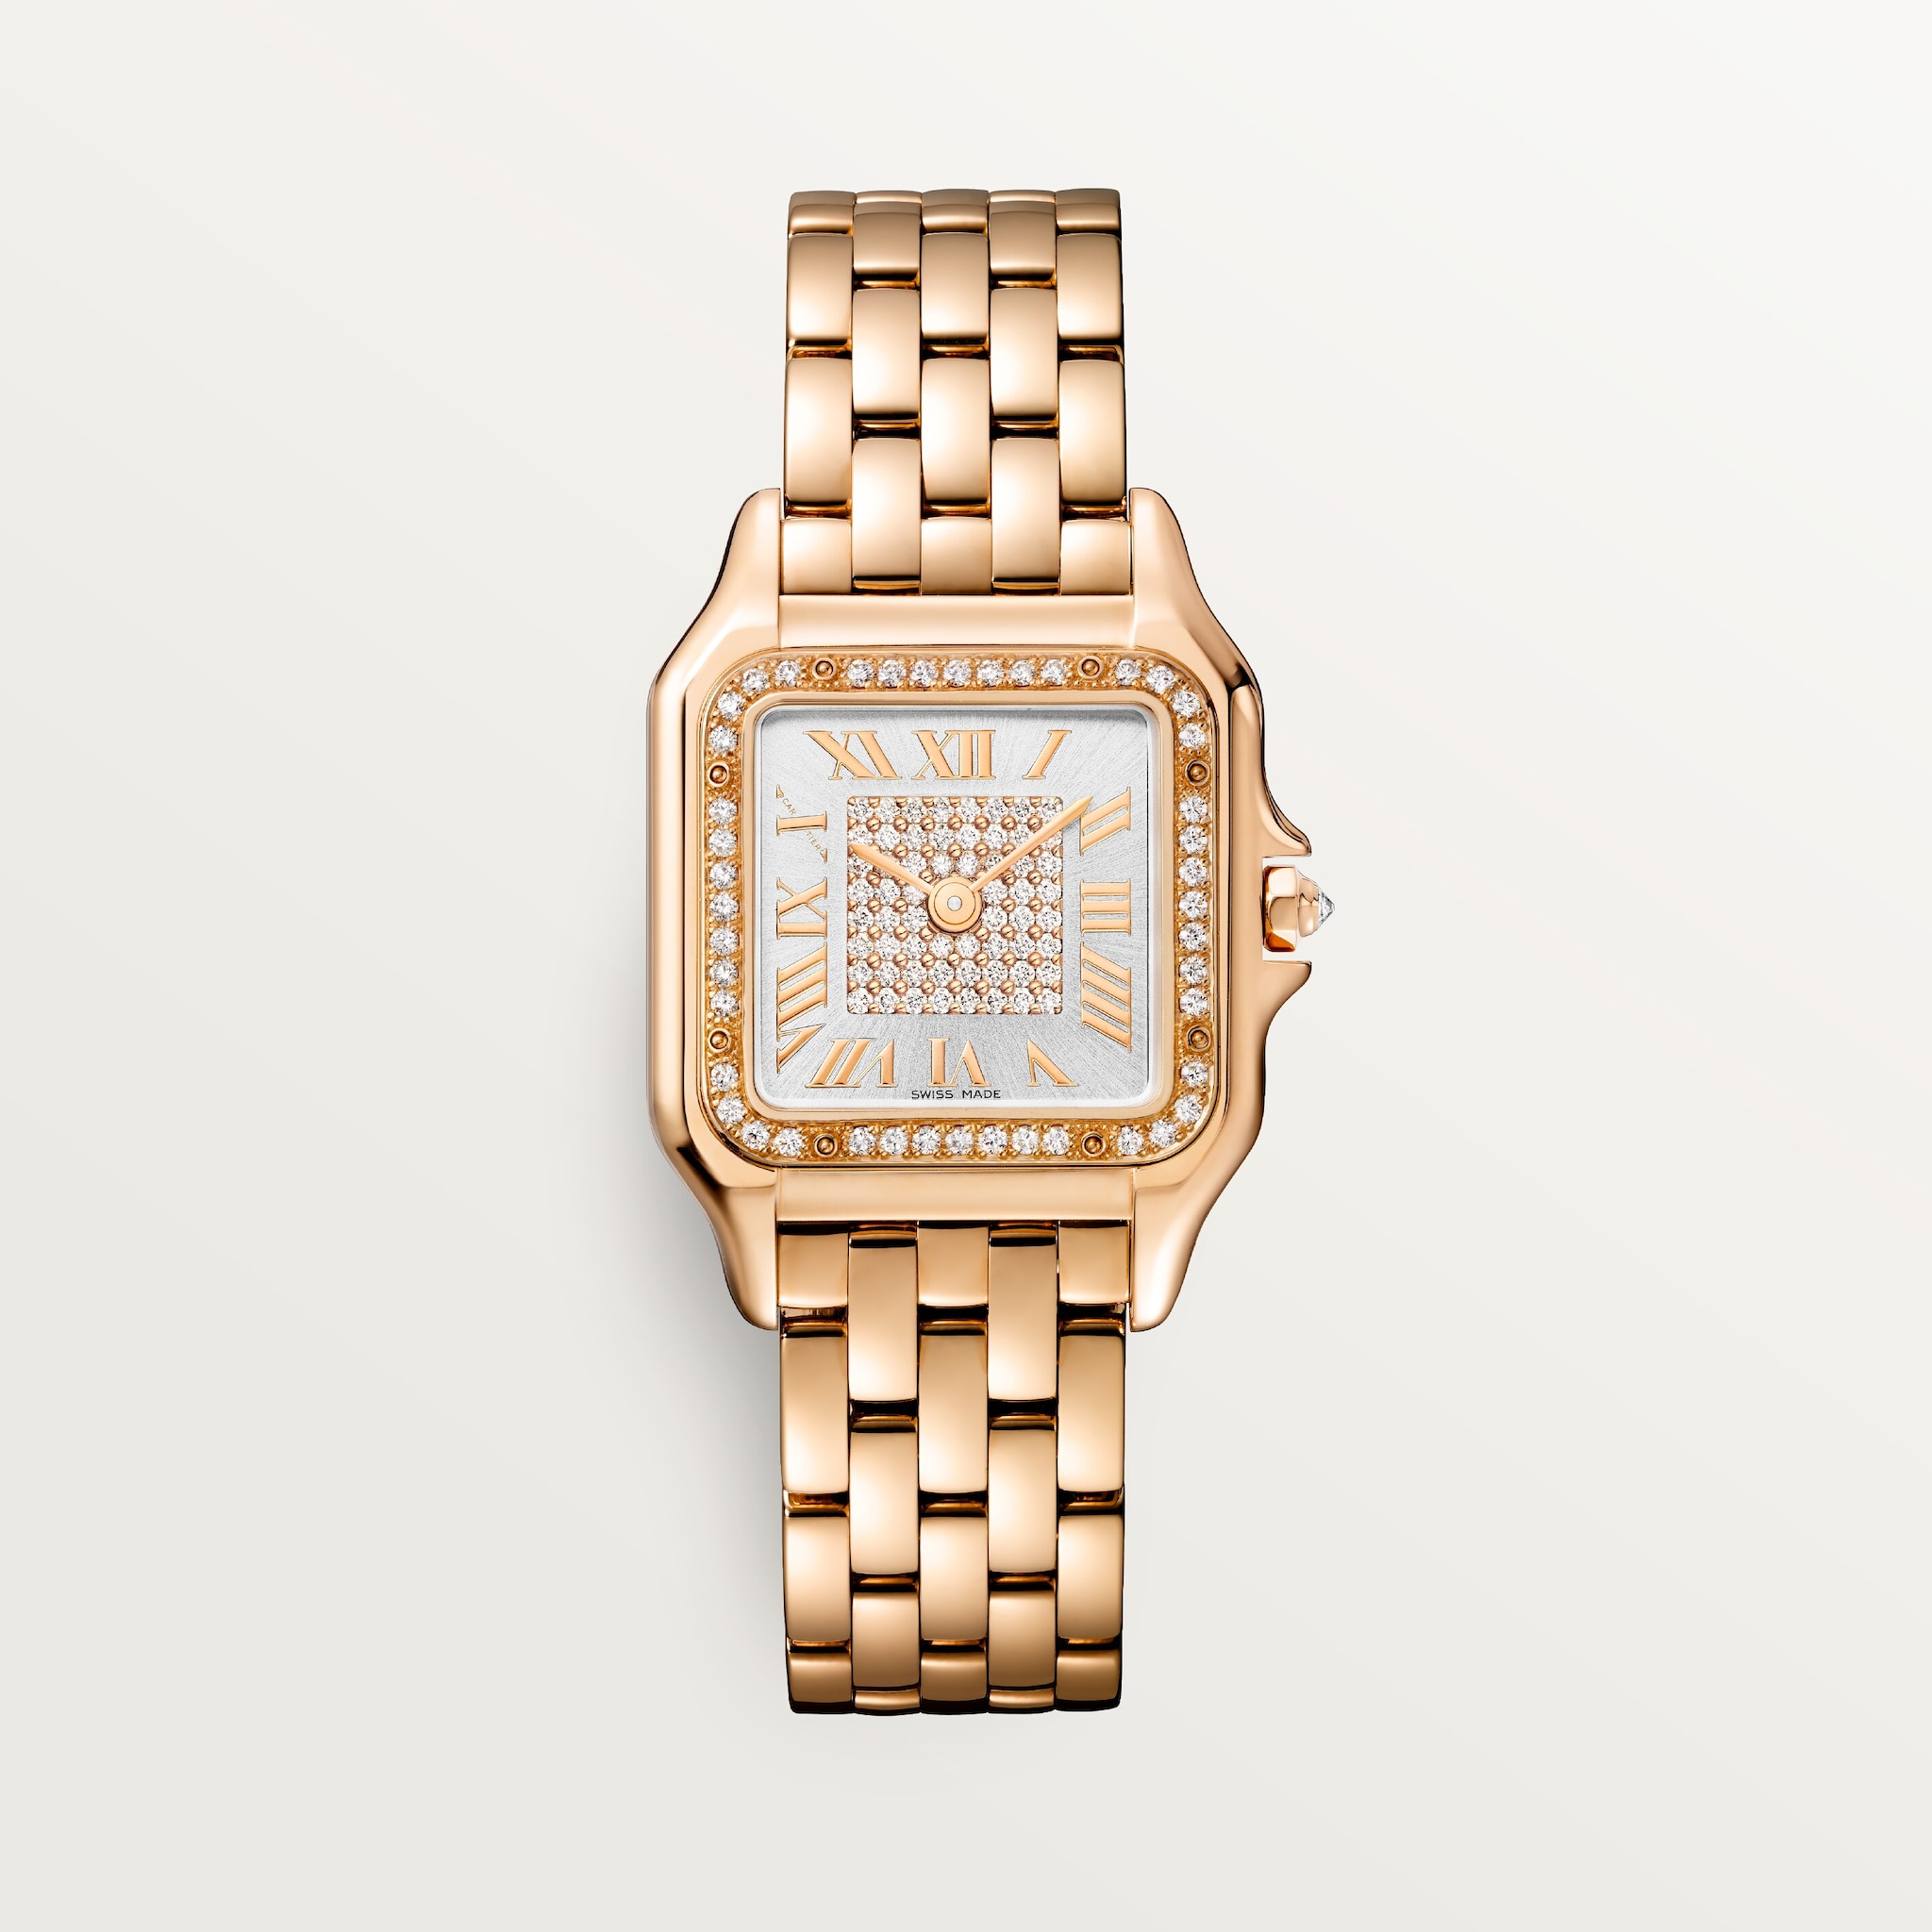 Panthère de Cartier watchMedium model, quartz, rose gold, diamonds